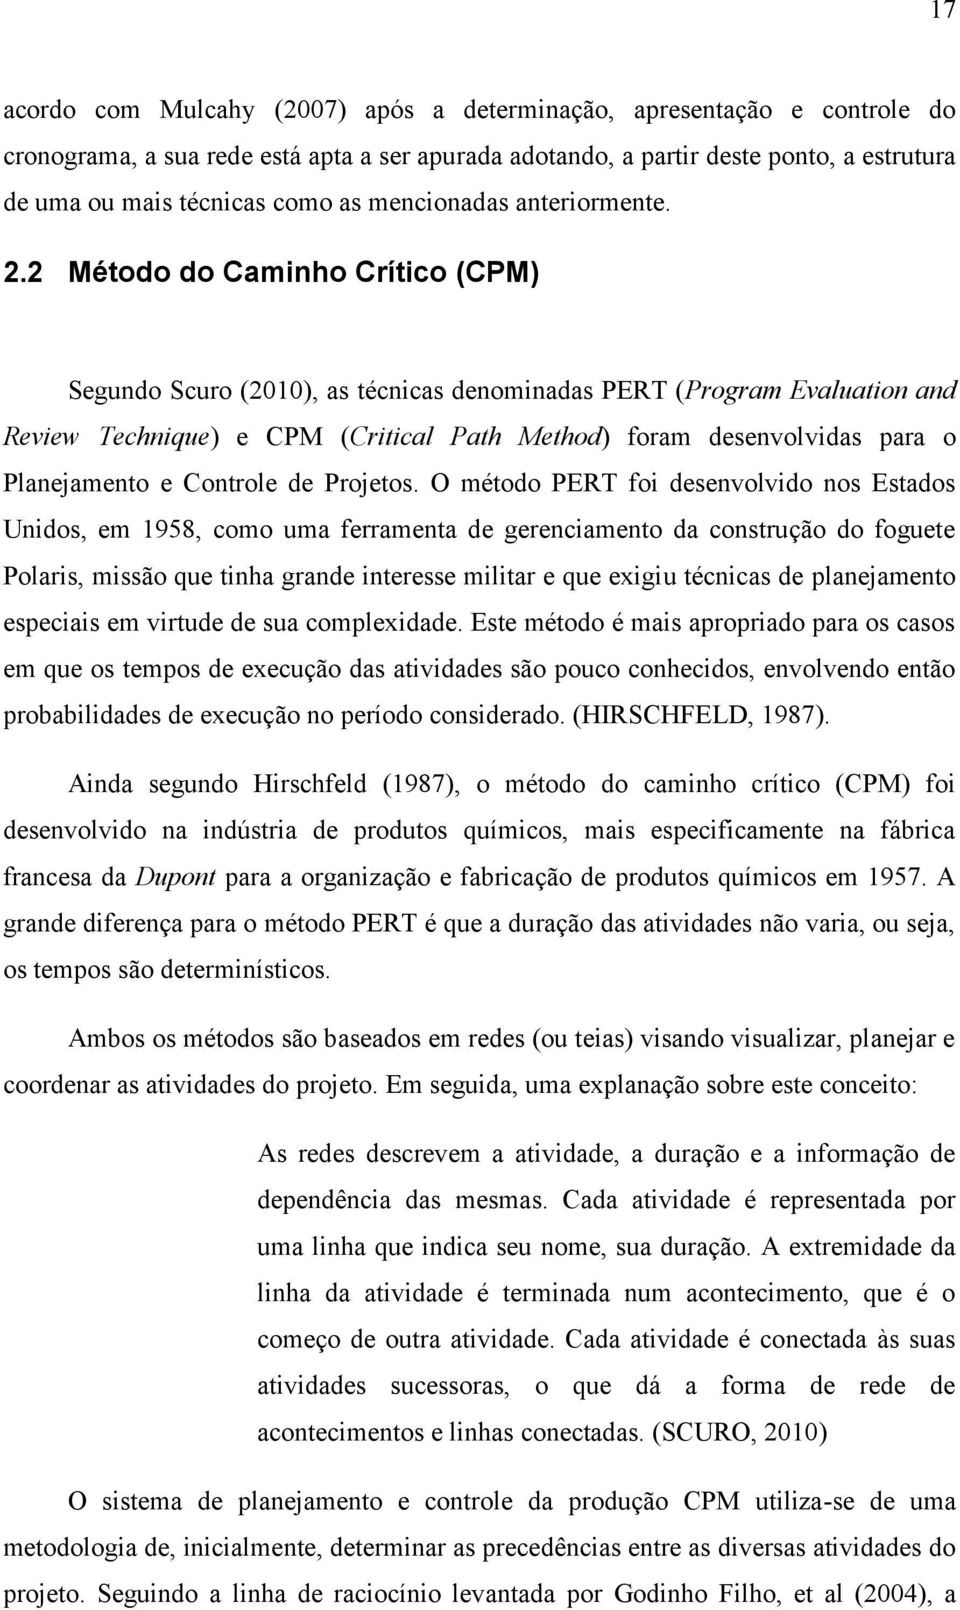 2 Método do Caminho Crítico (CPM) Segundo Scuro (2010), as técnicas denominadas PERT (Program Evaluation and Review Technique) e CPM (Critical Path Method) foram desenvolvidas para o Planejamento e